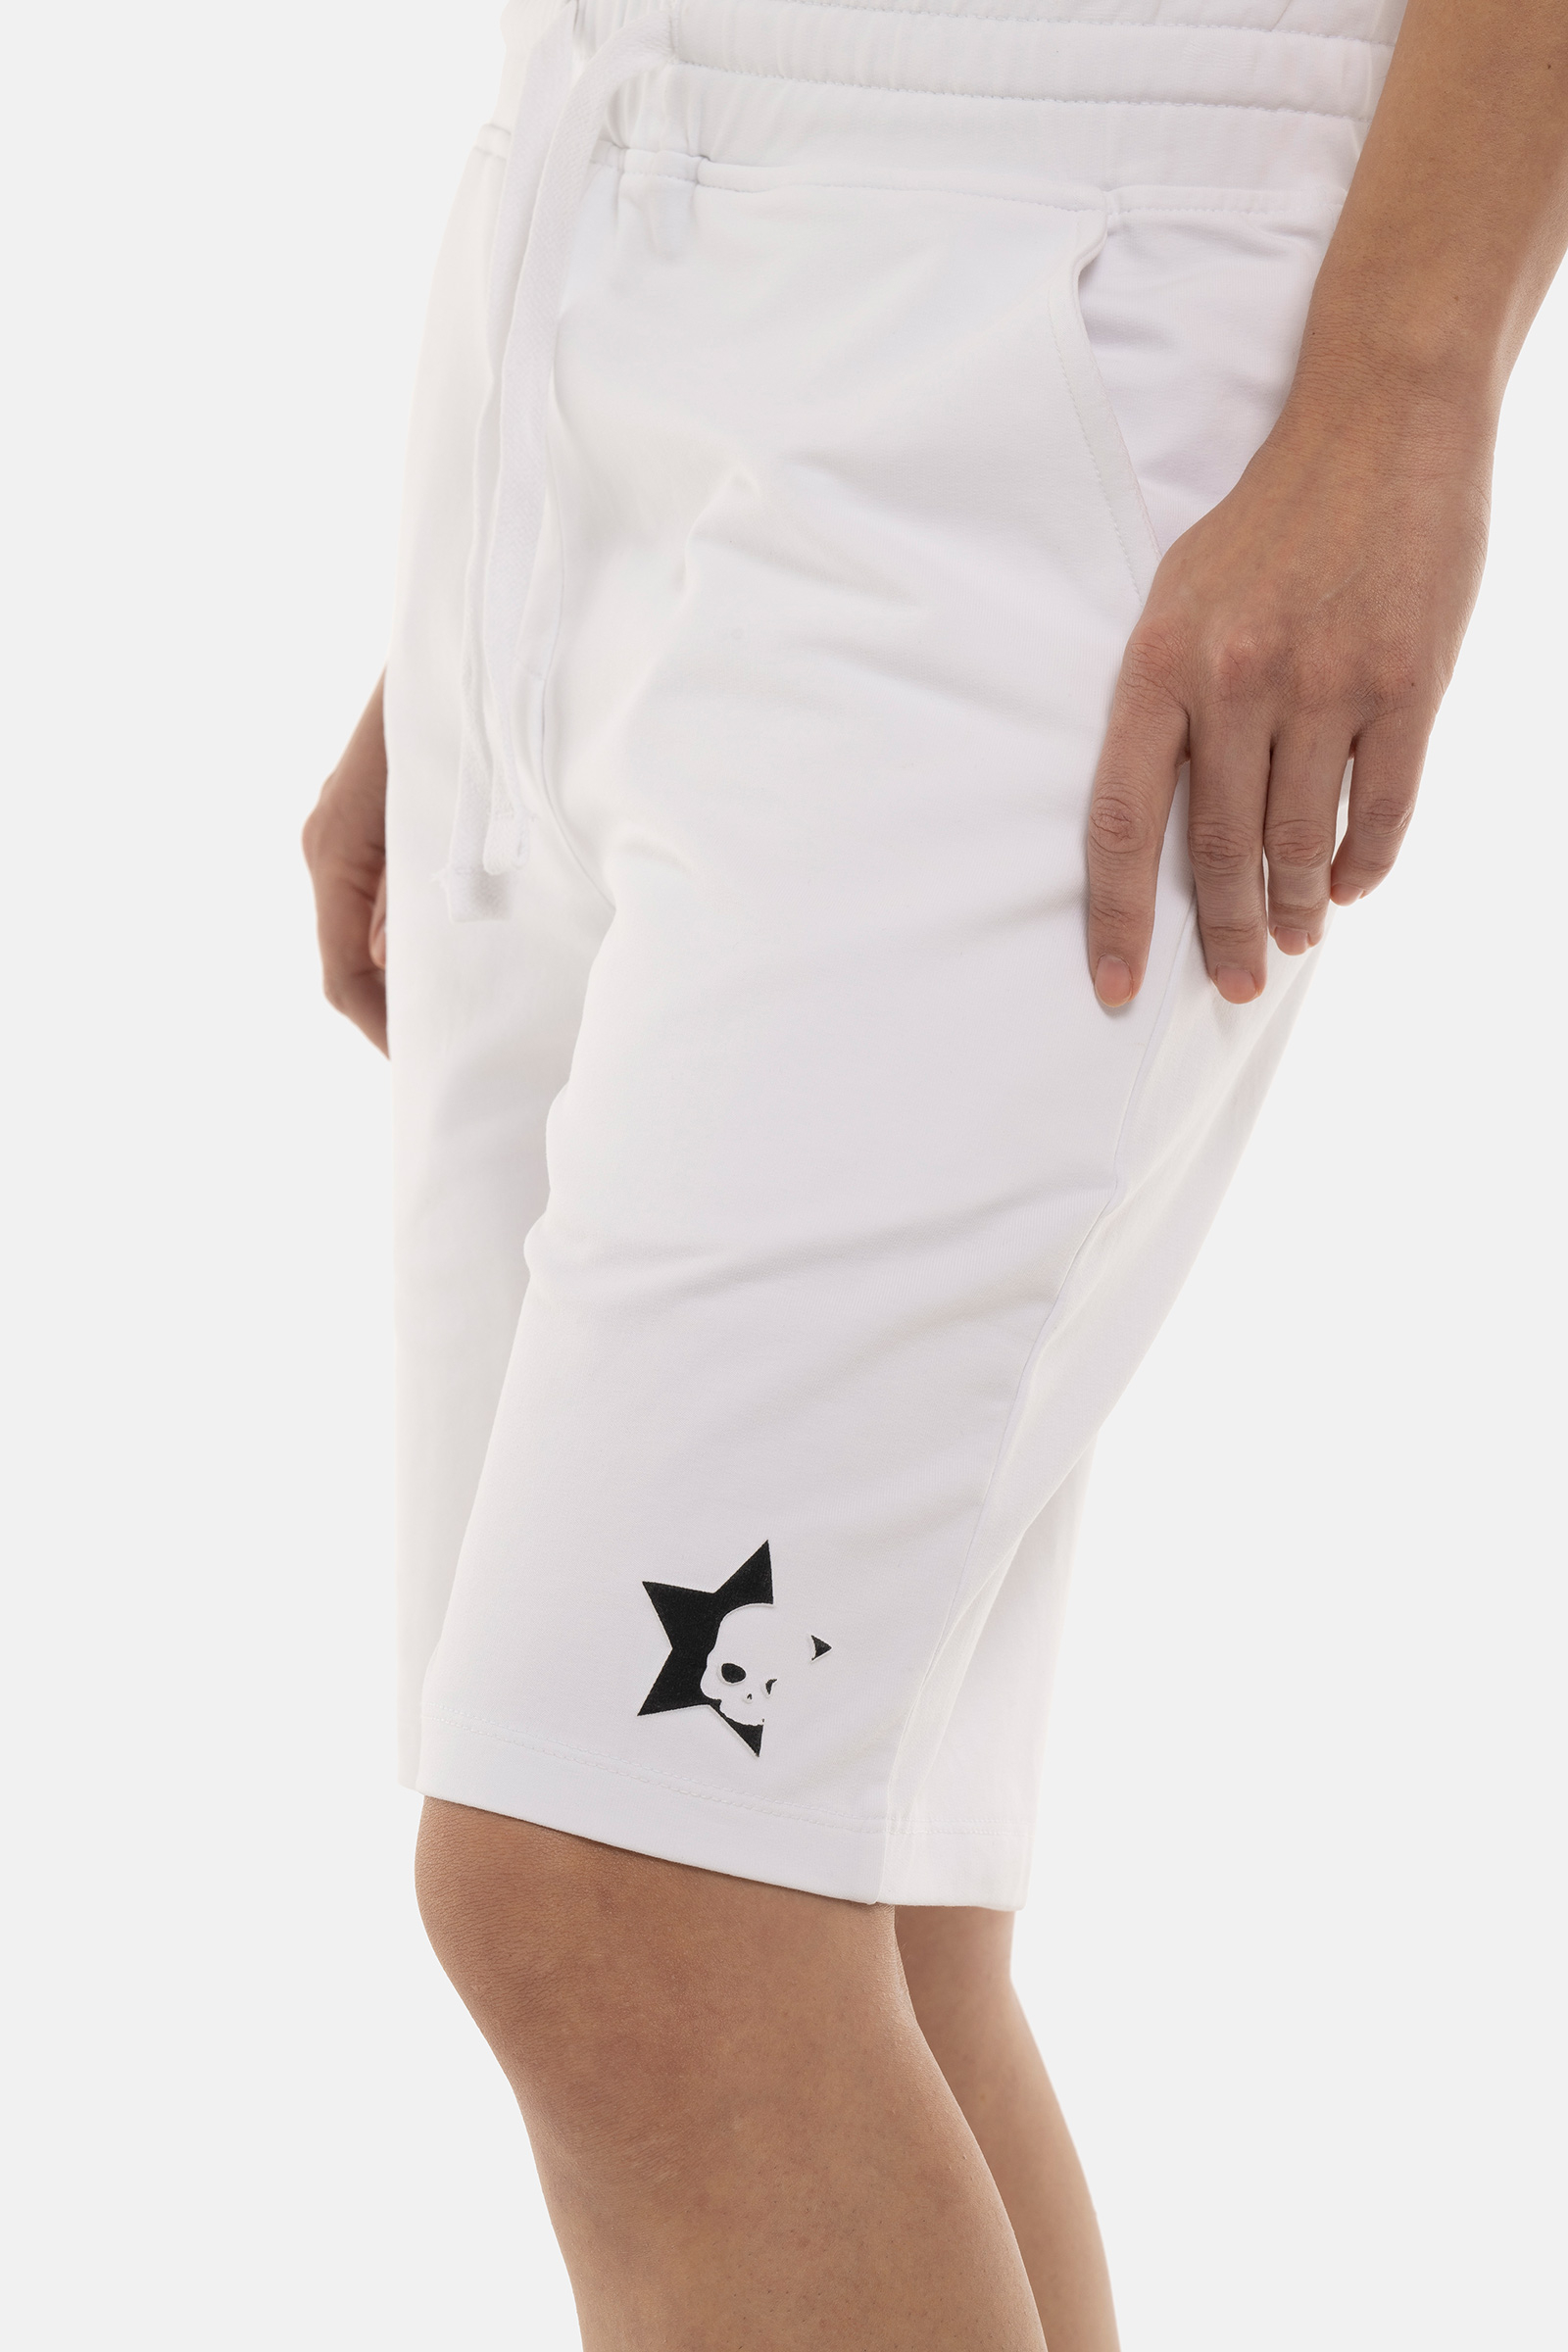 PANTALONCINO STARS - WHITE - Abbigliamento sportivo | Hydrogen